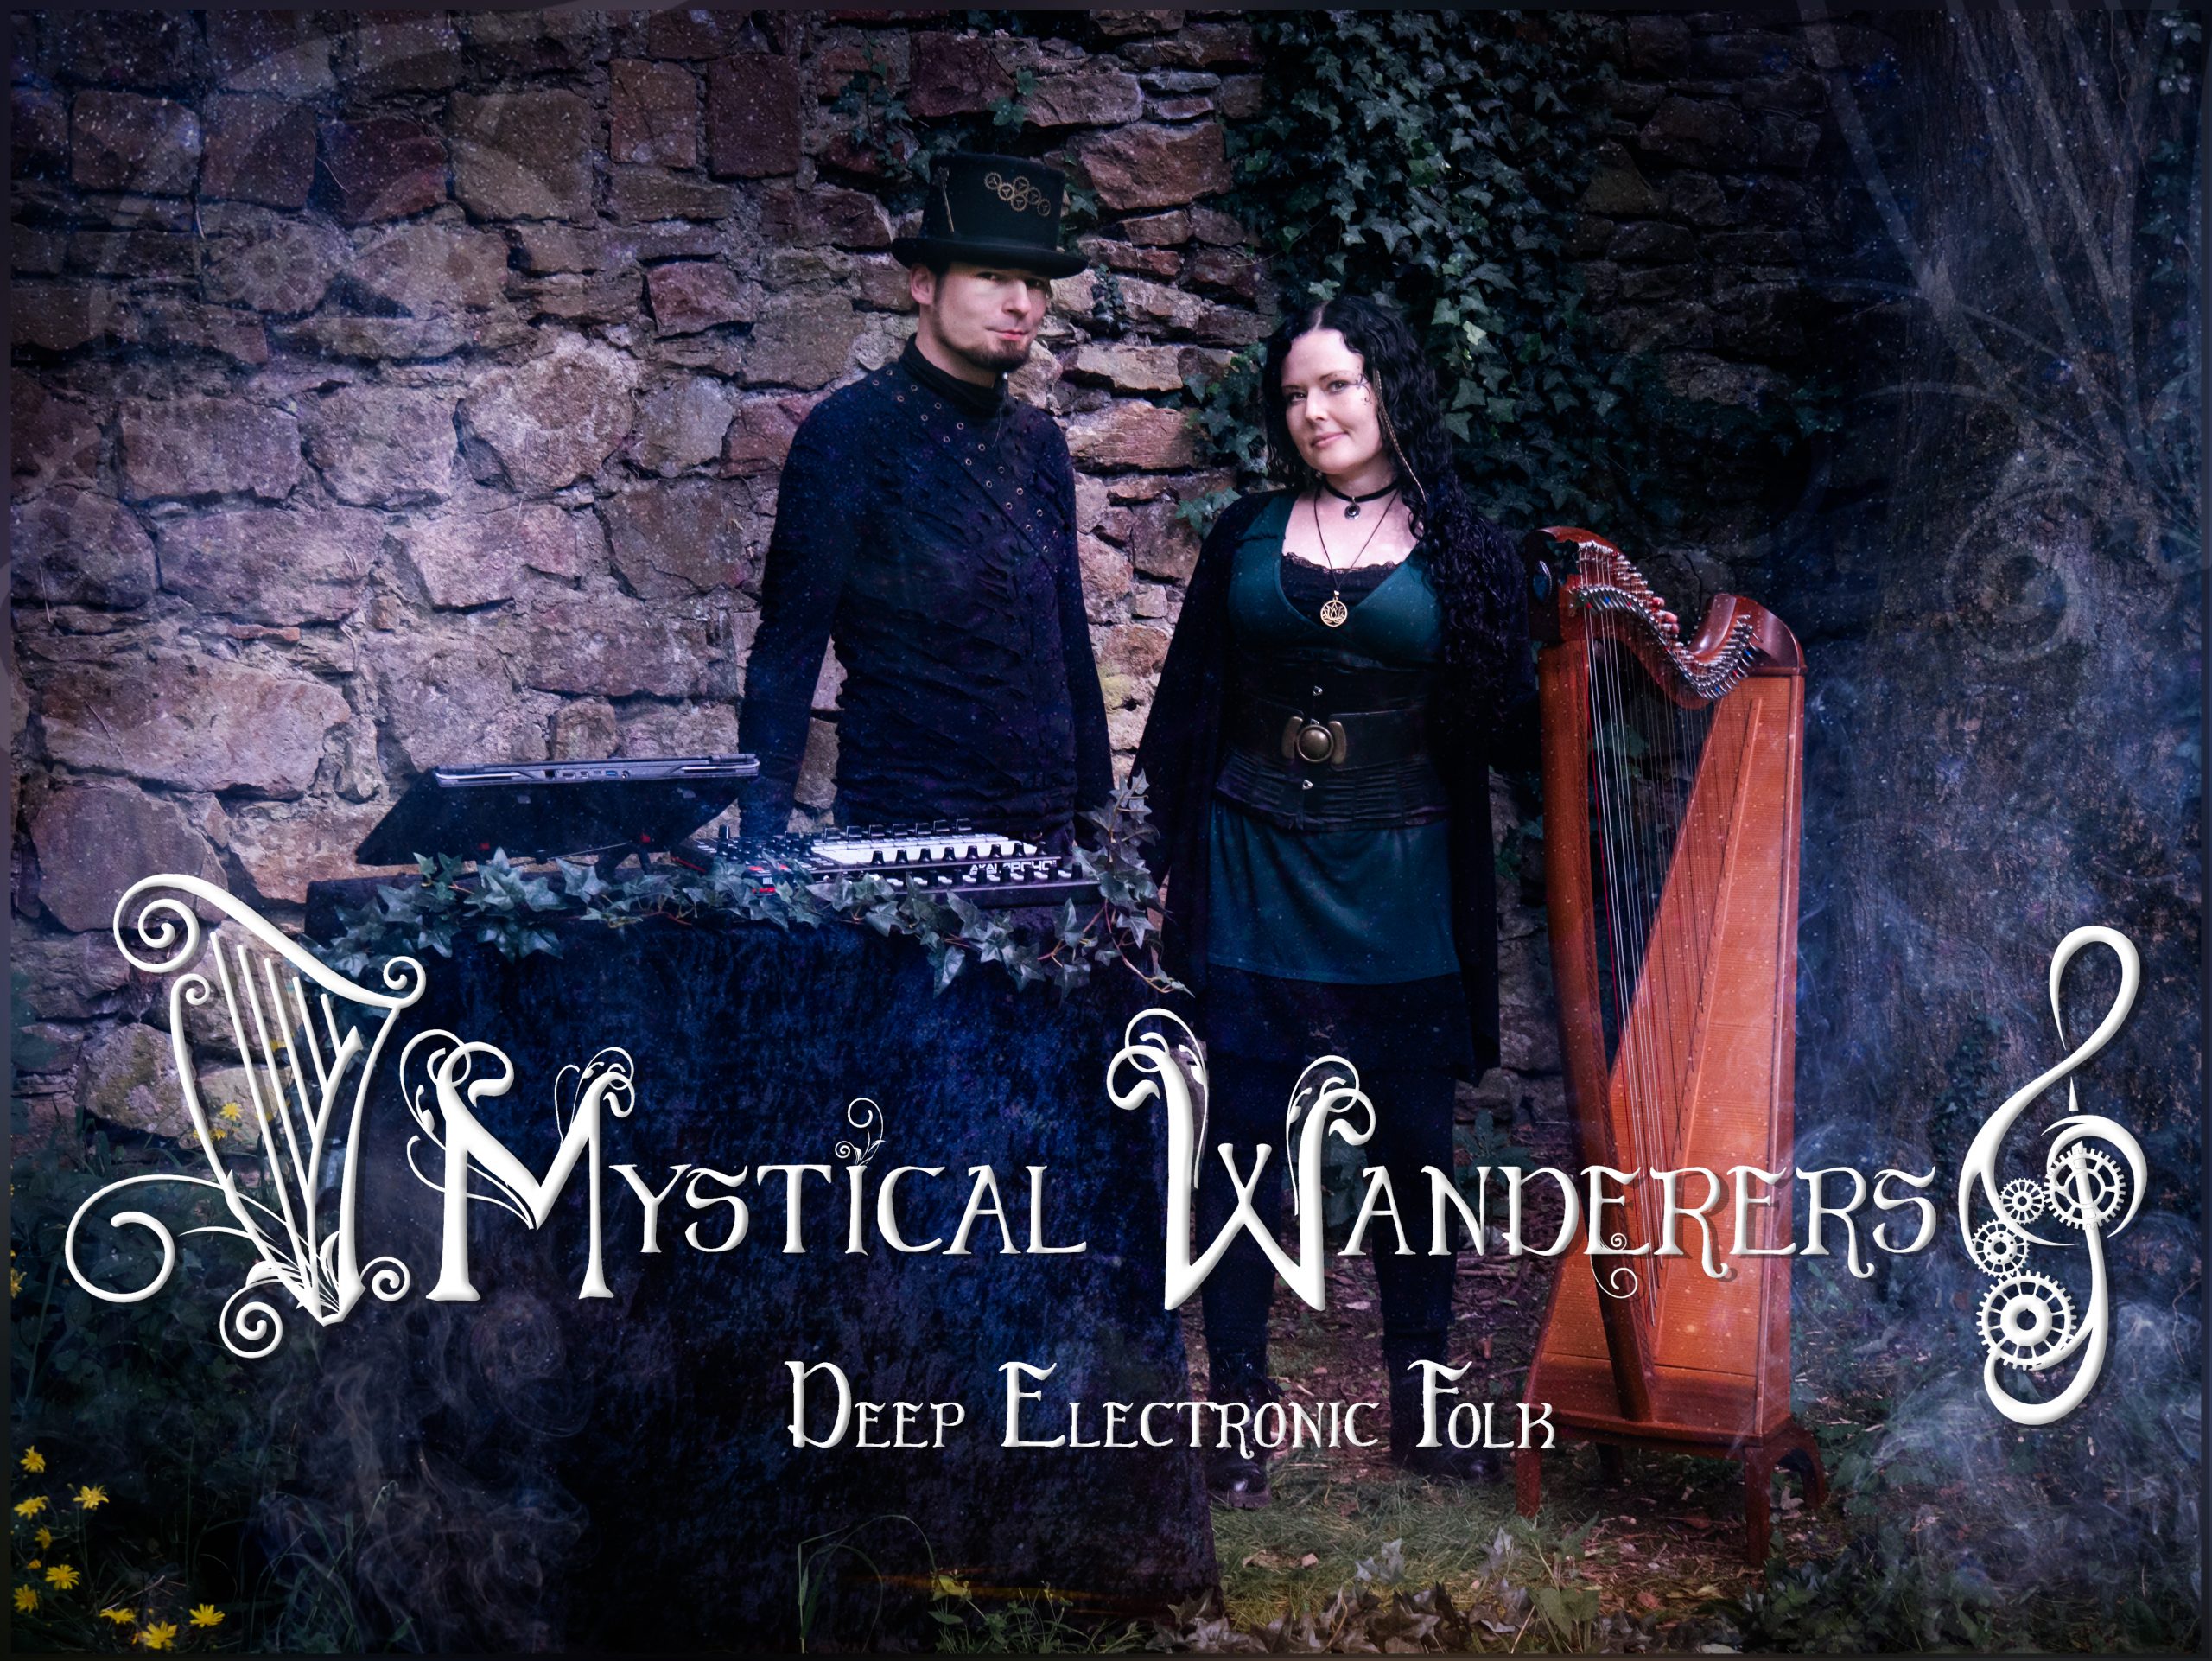 Mystical Wanderers – Folkmusik der ganz besonderen Art!